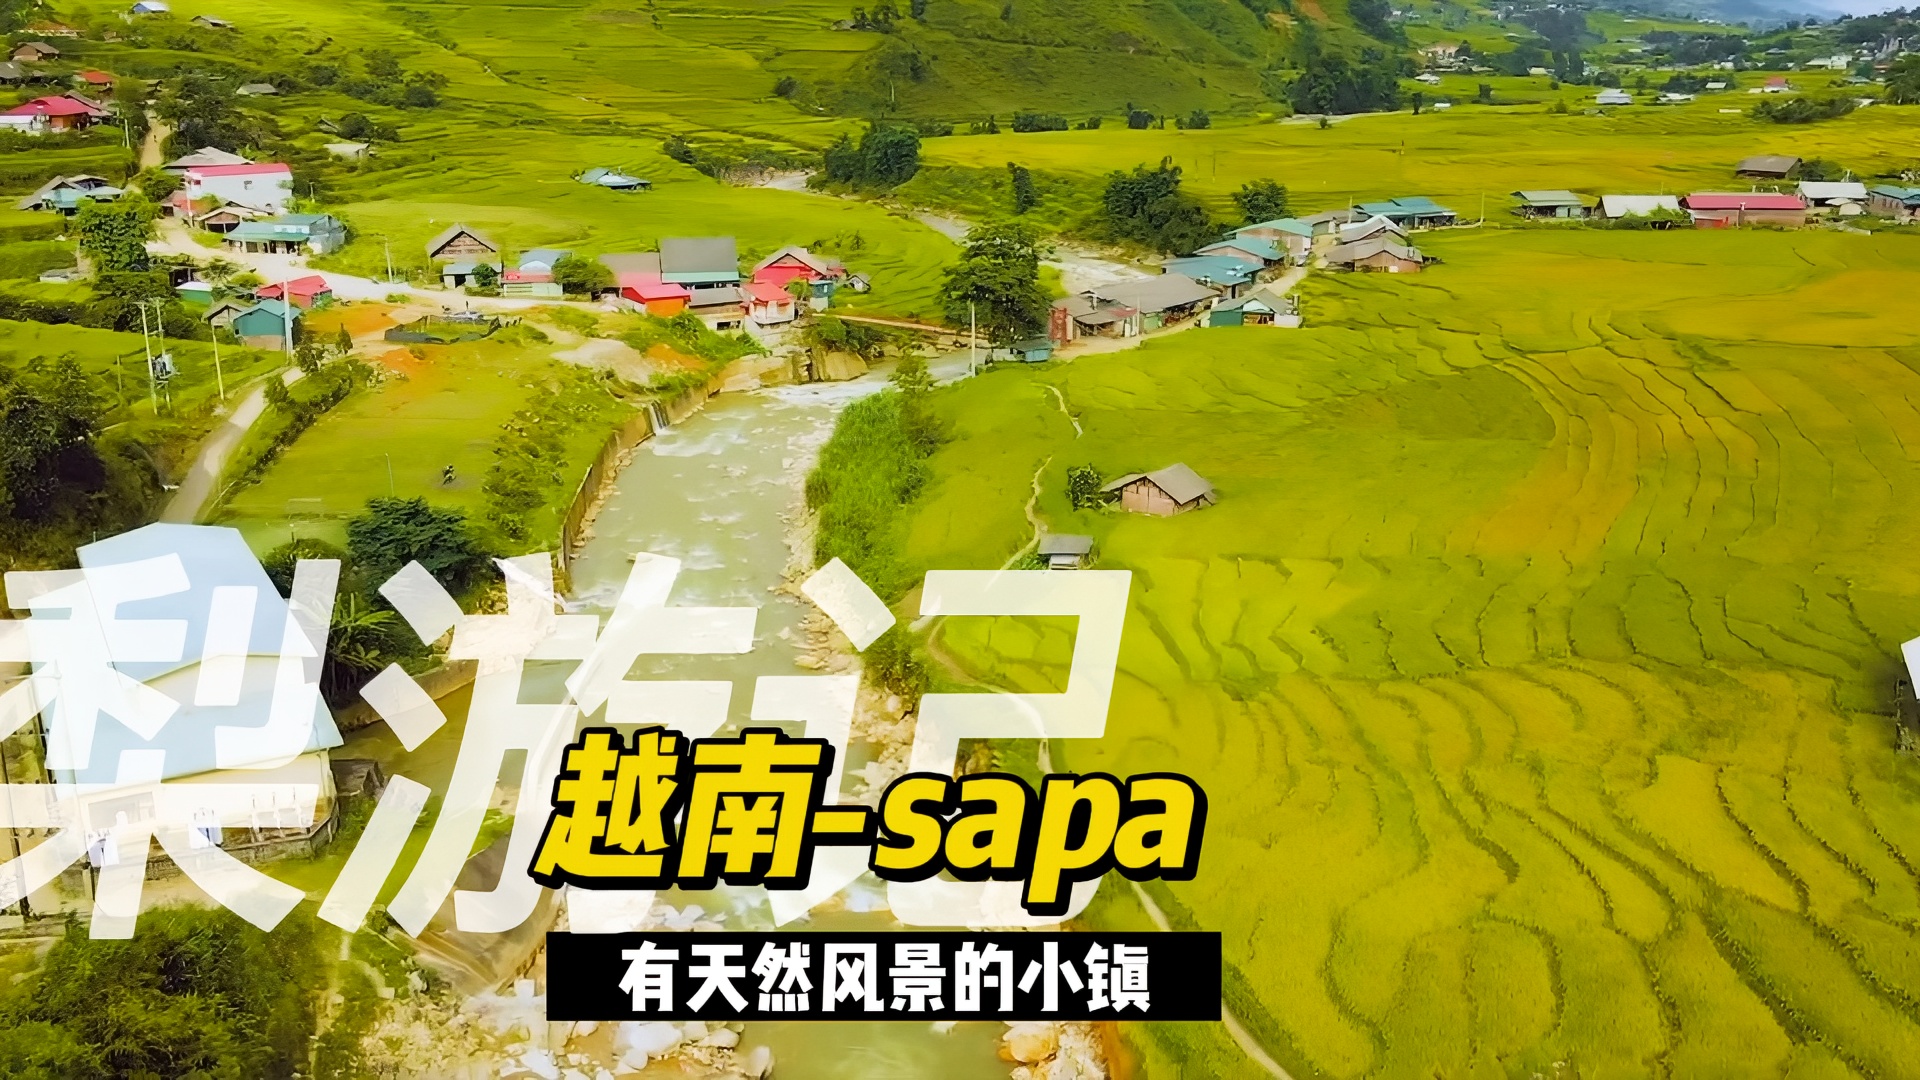 sapa东南亚之旅